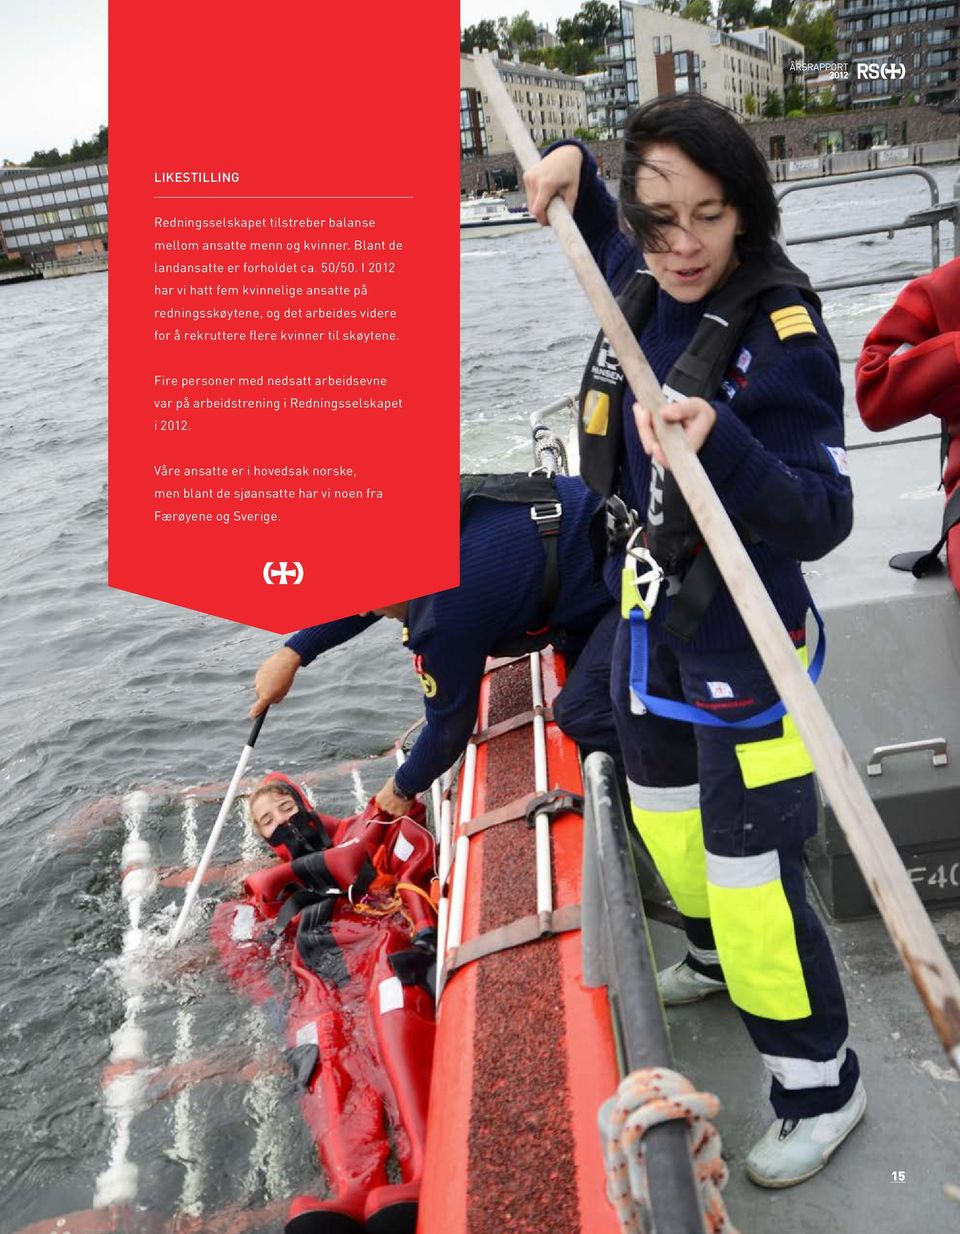 I 2012 har vi hatt fem kvinnelige ansatte på redningsskøytene, og det arbeides videre for å rekruttere flere